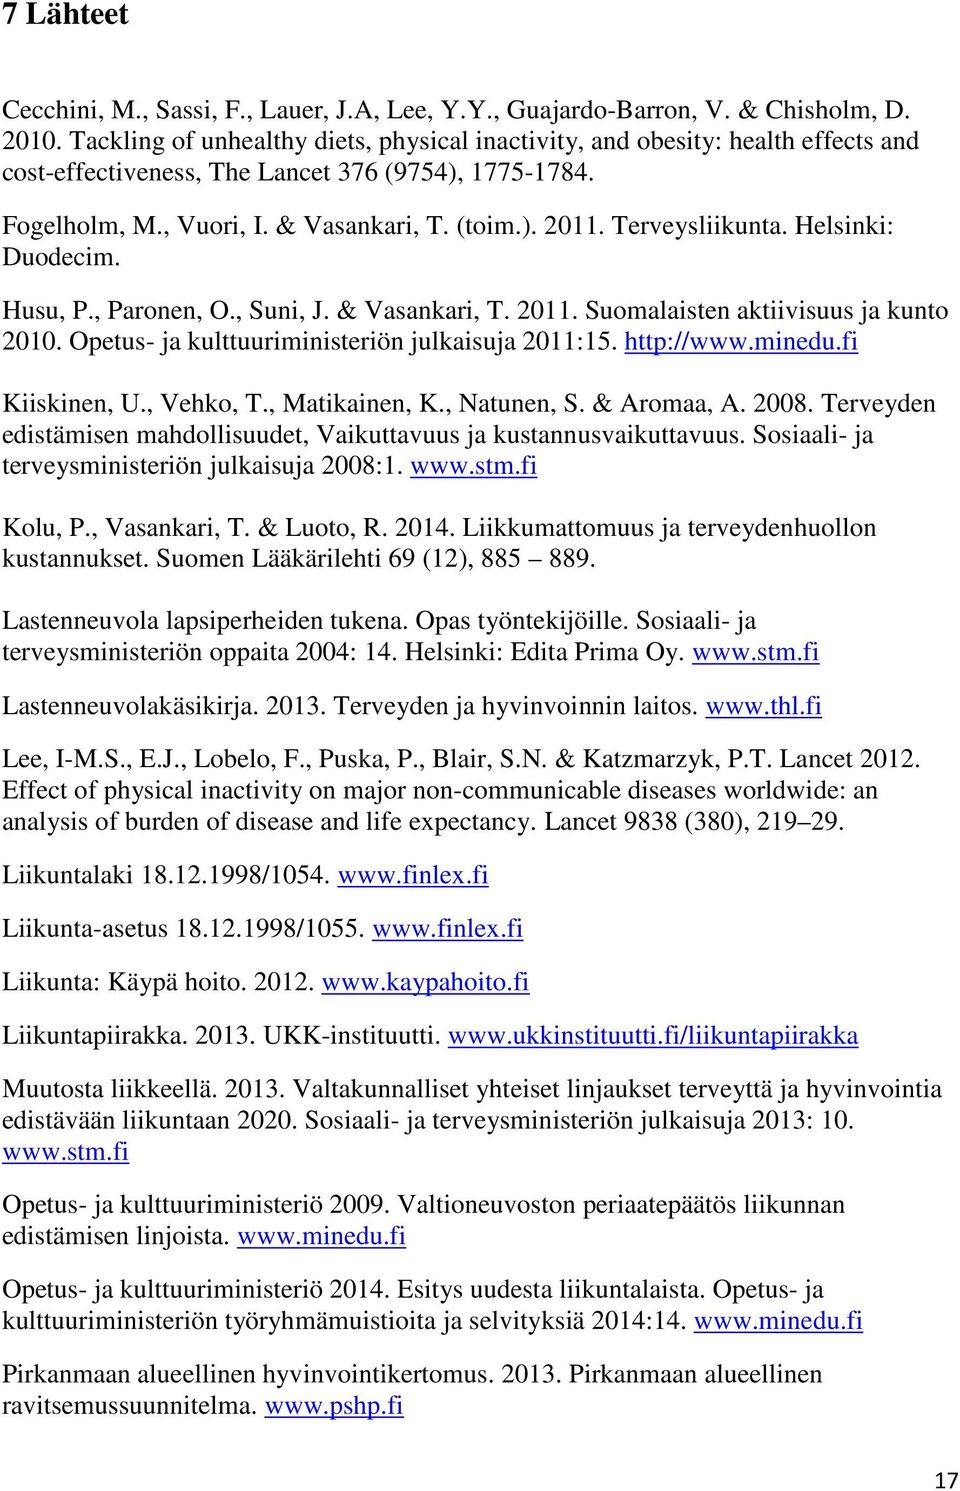 Terveysliikunta. Helsinki: Duodecim. Husu, P., Paronen, O., Suni, J. & Vasankari, T. 2011. Suomalaisten aktiivisuus ja kunto 2010. Opetus- ja kulttuuriministeriön julkaisuja 2011:15. http://www.